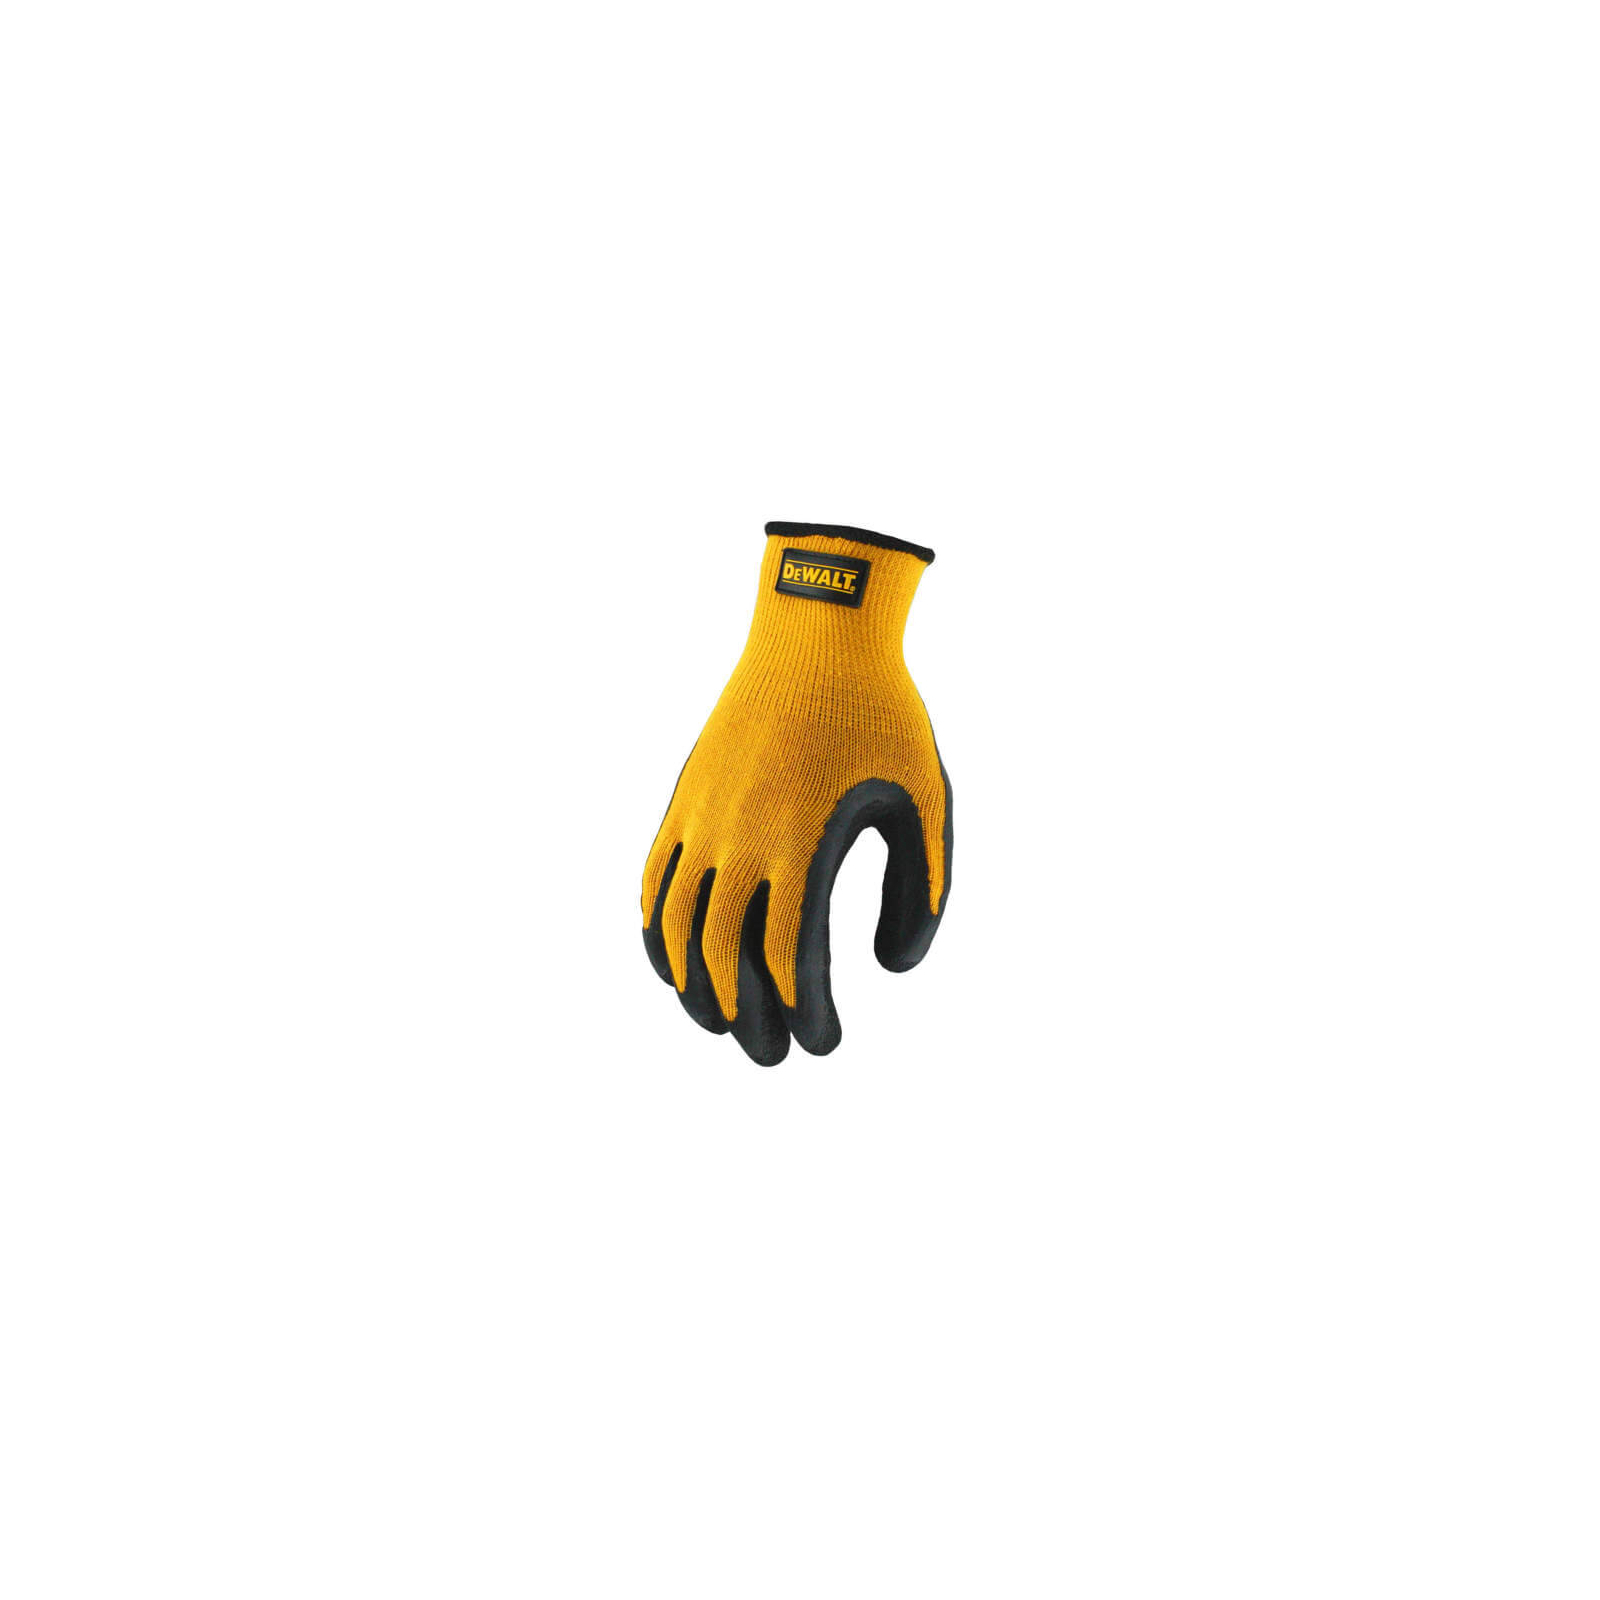 Защитные перчатки DeWALT разм. L/9, с резиновым покрытием (DPG70L) изображение 2